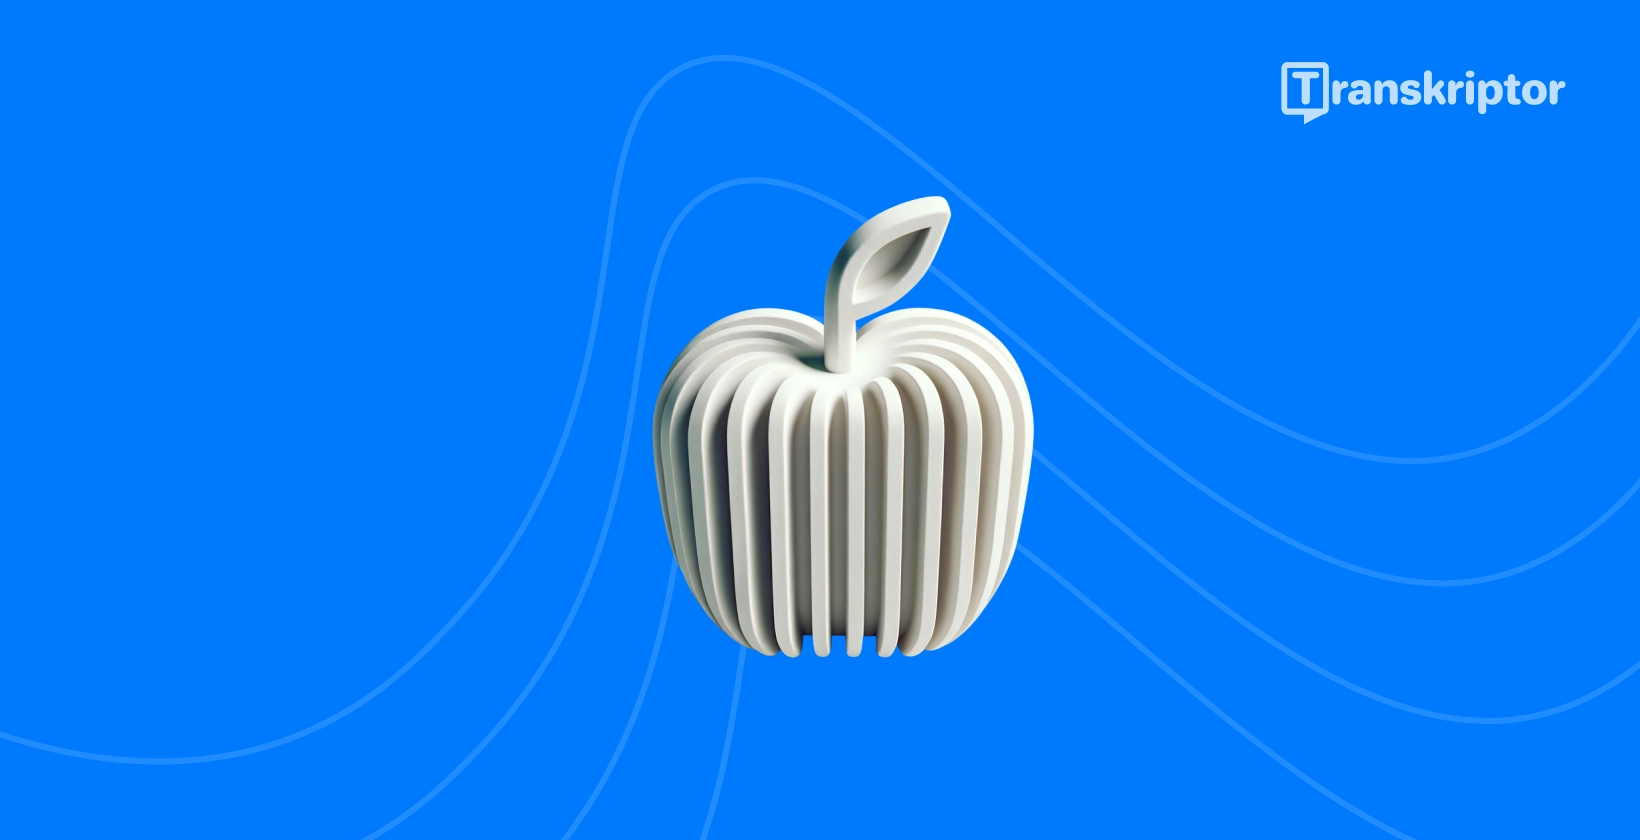 Stiliserat äpple med ljudvågor representerar de bästa transkriptionsapparna som är tillgängliga för iPhone användare.